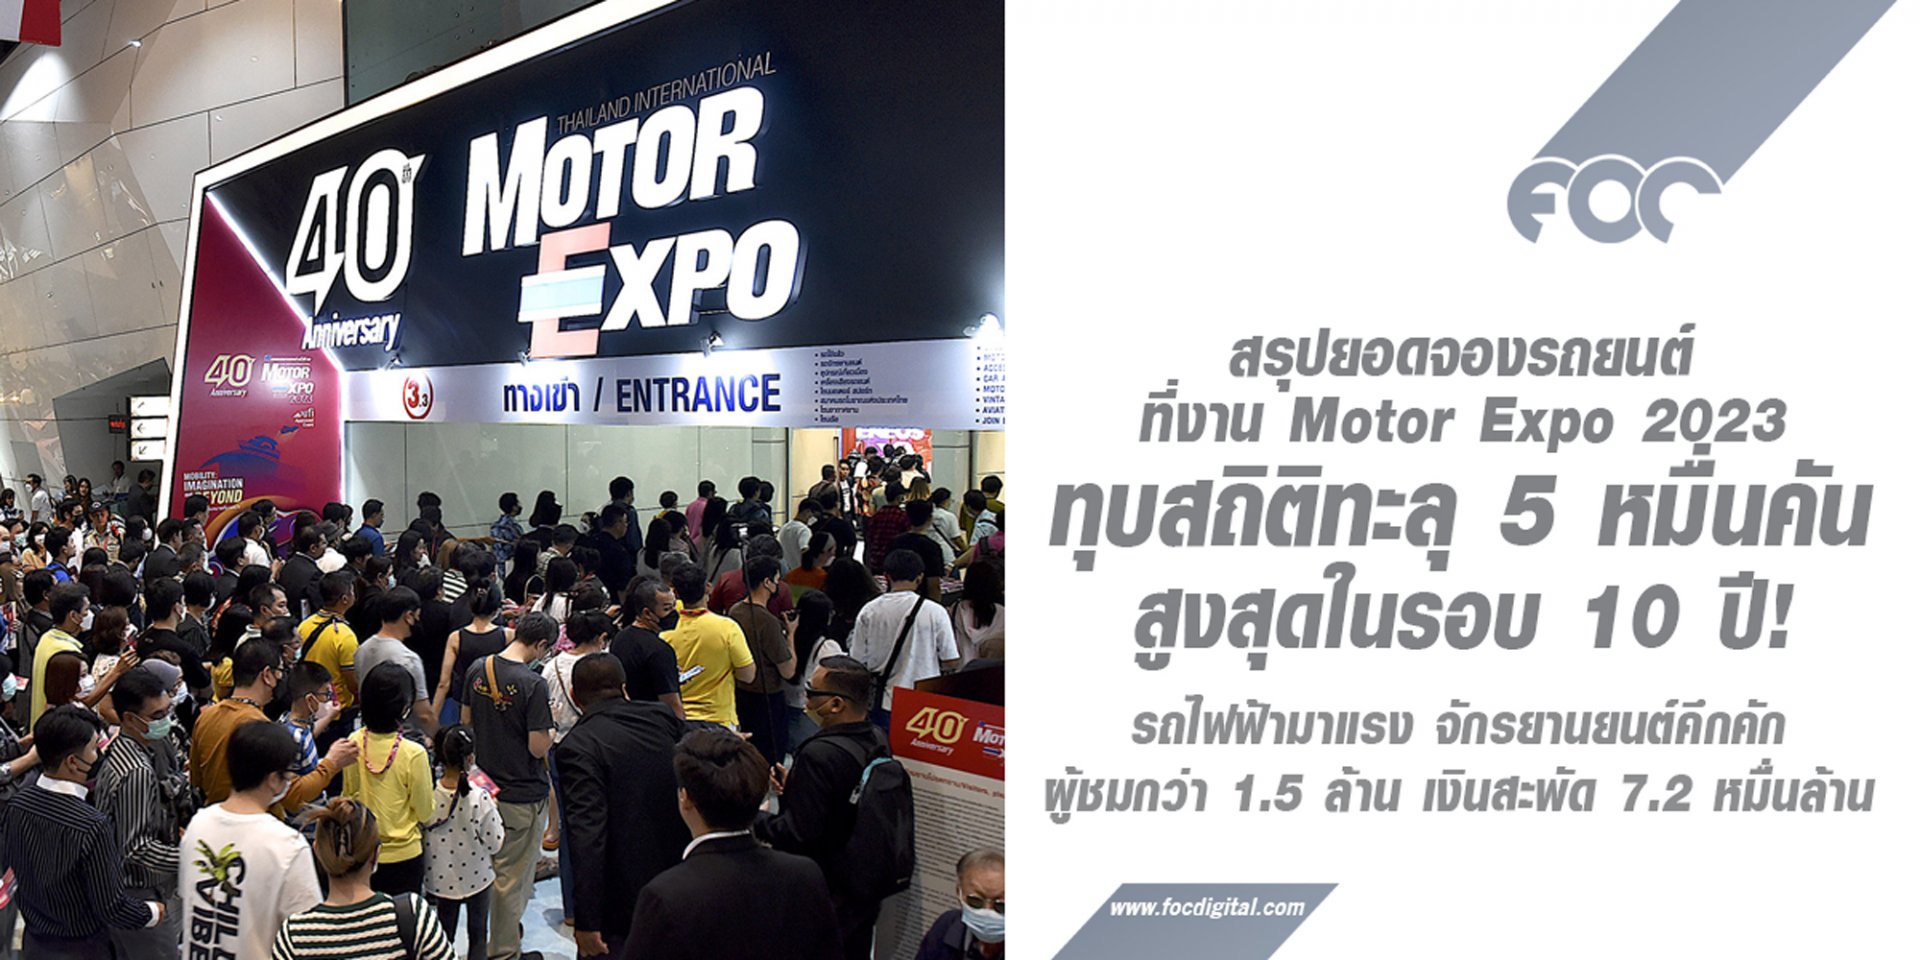 ปิดฉากหรู สรุปยอดจองรถยนต์ที่งาน Motor Expo 2023 ทุบสถิติทะลุ 5 หมื่นคันสูงสุดในรอบ 10 ปี! 